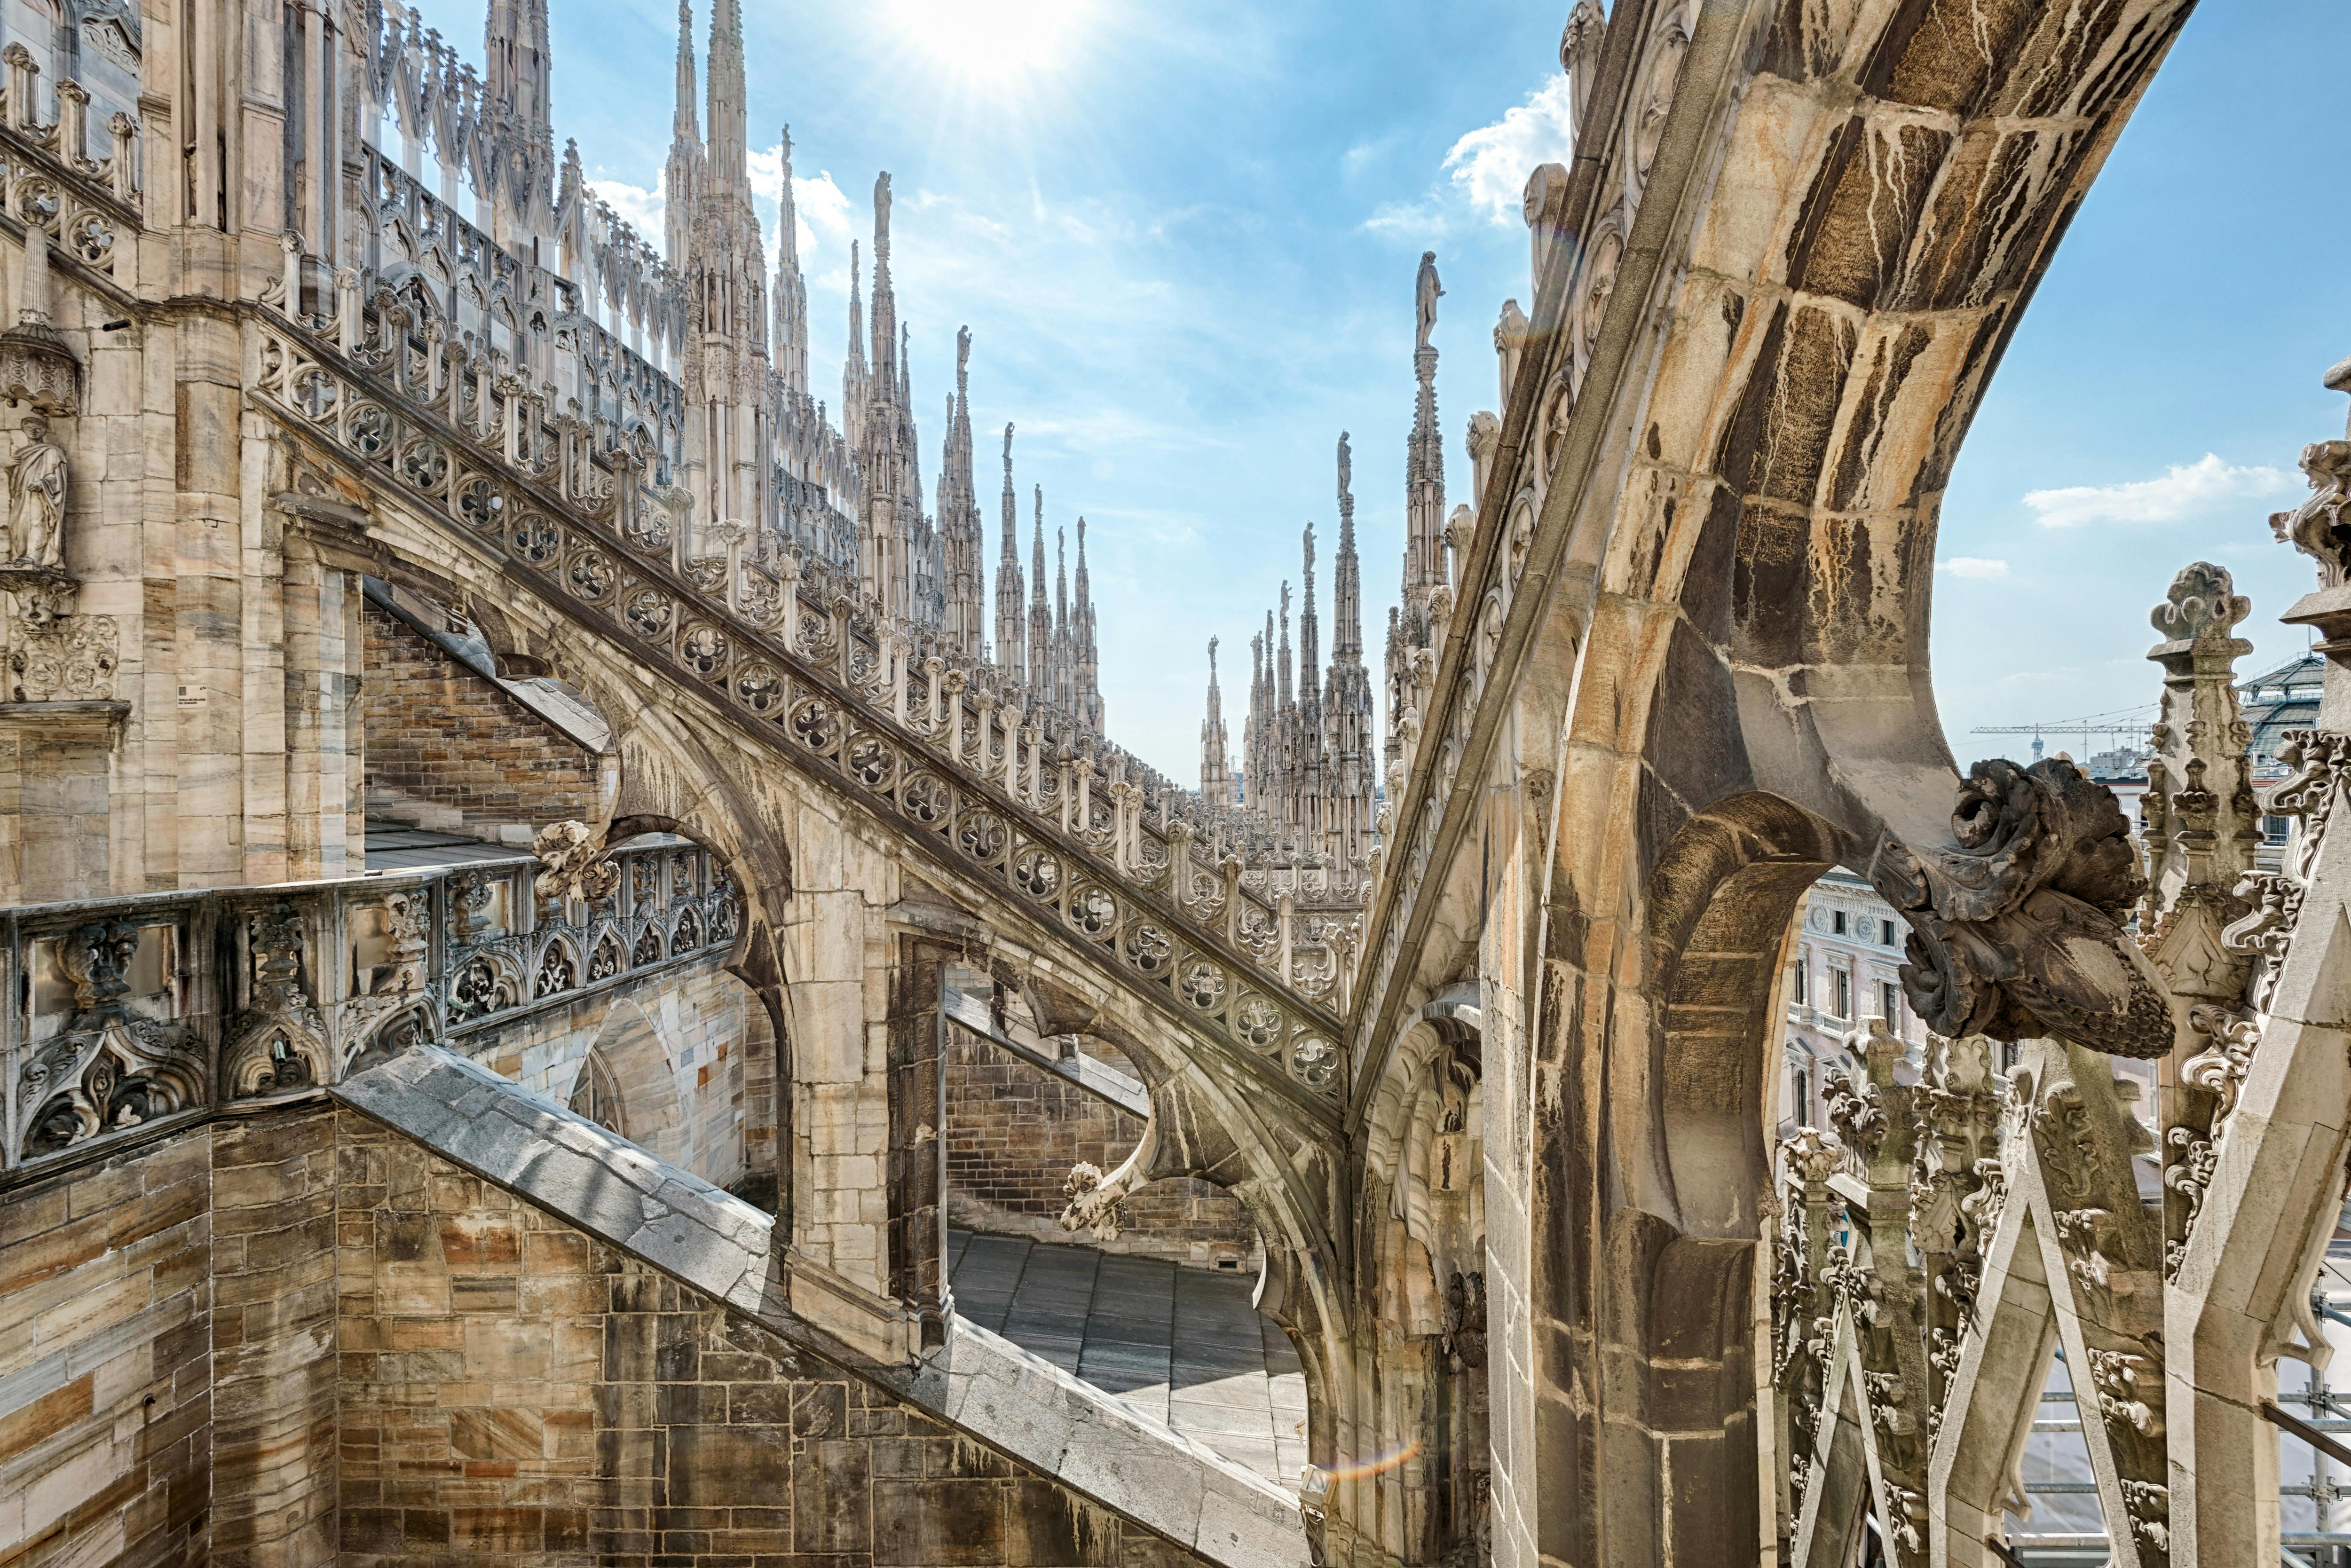 Tour salta fila delle terrazze sul tetto del Duomo di Milano